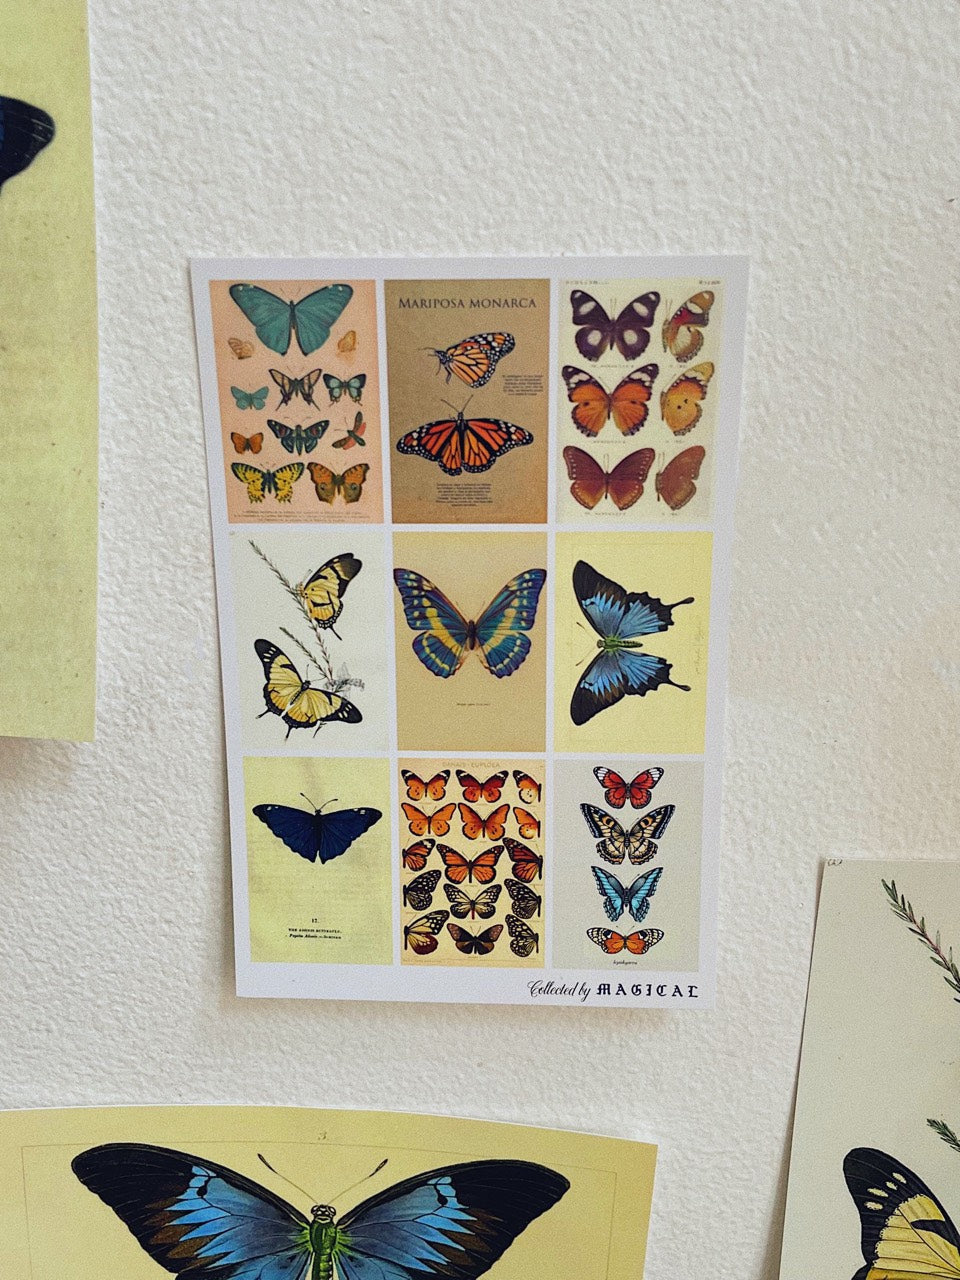 Butterflies Postcard